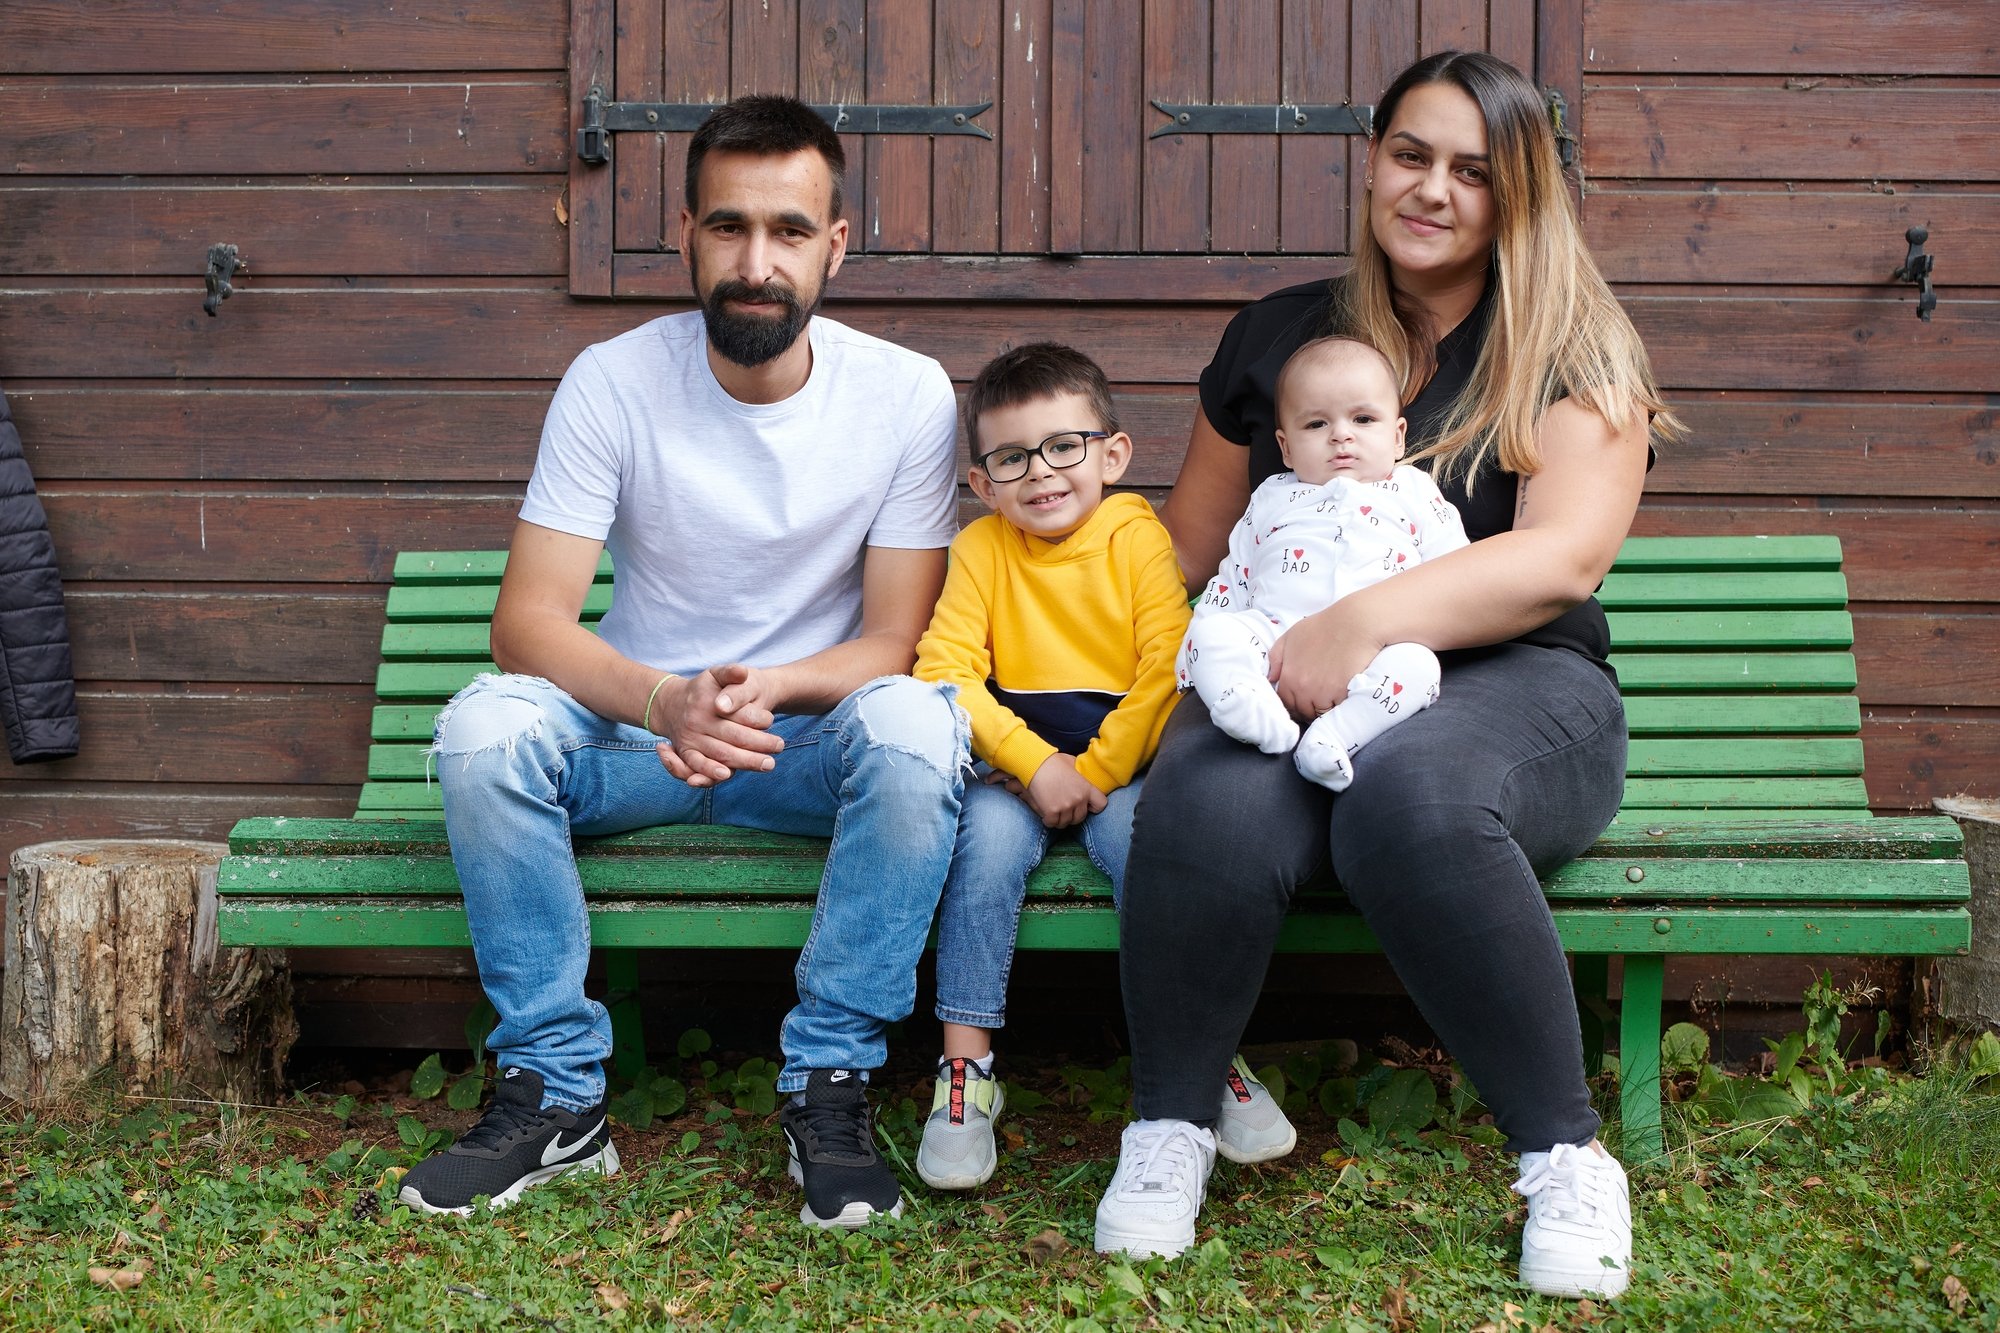 Telma Sousa et Micael Figueiredo avaient prévu d'emmener leurs enfants au Portugal cet automne, pour revoir enfin leurs proches. Ils ont dû annuler leur voyage.